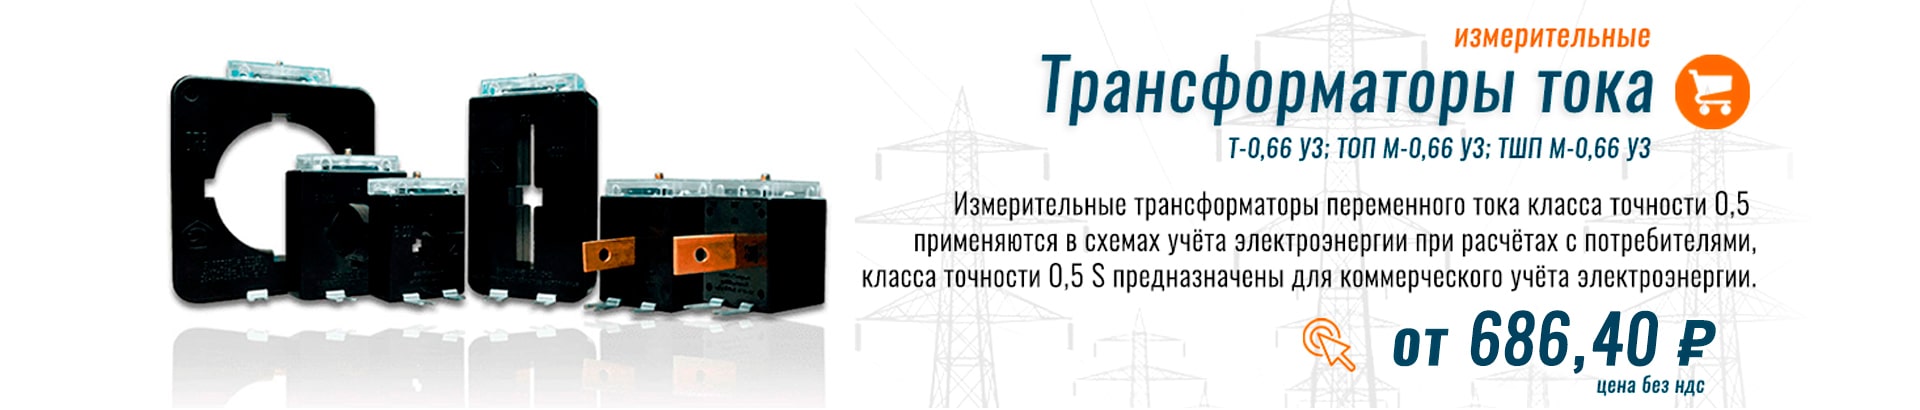 Трансформаторы тока Т-0,66 У3 по цене от 687 рублей.